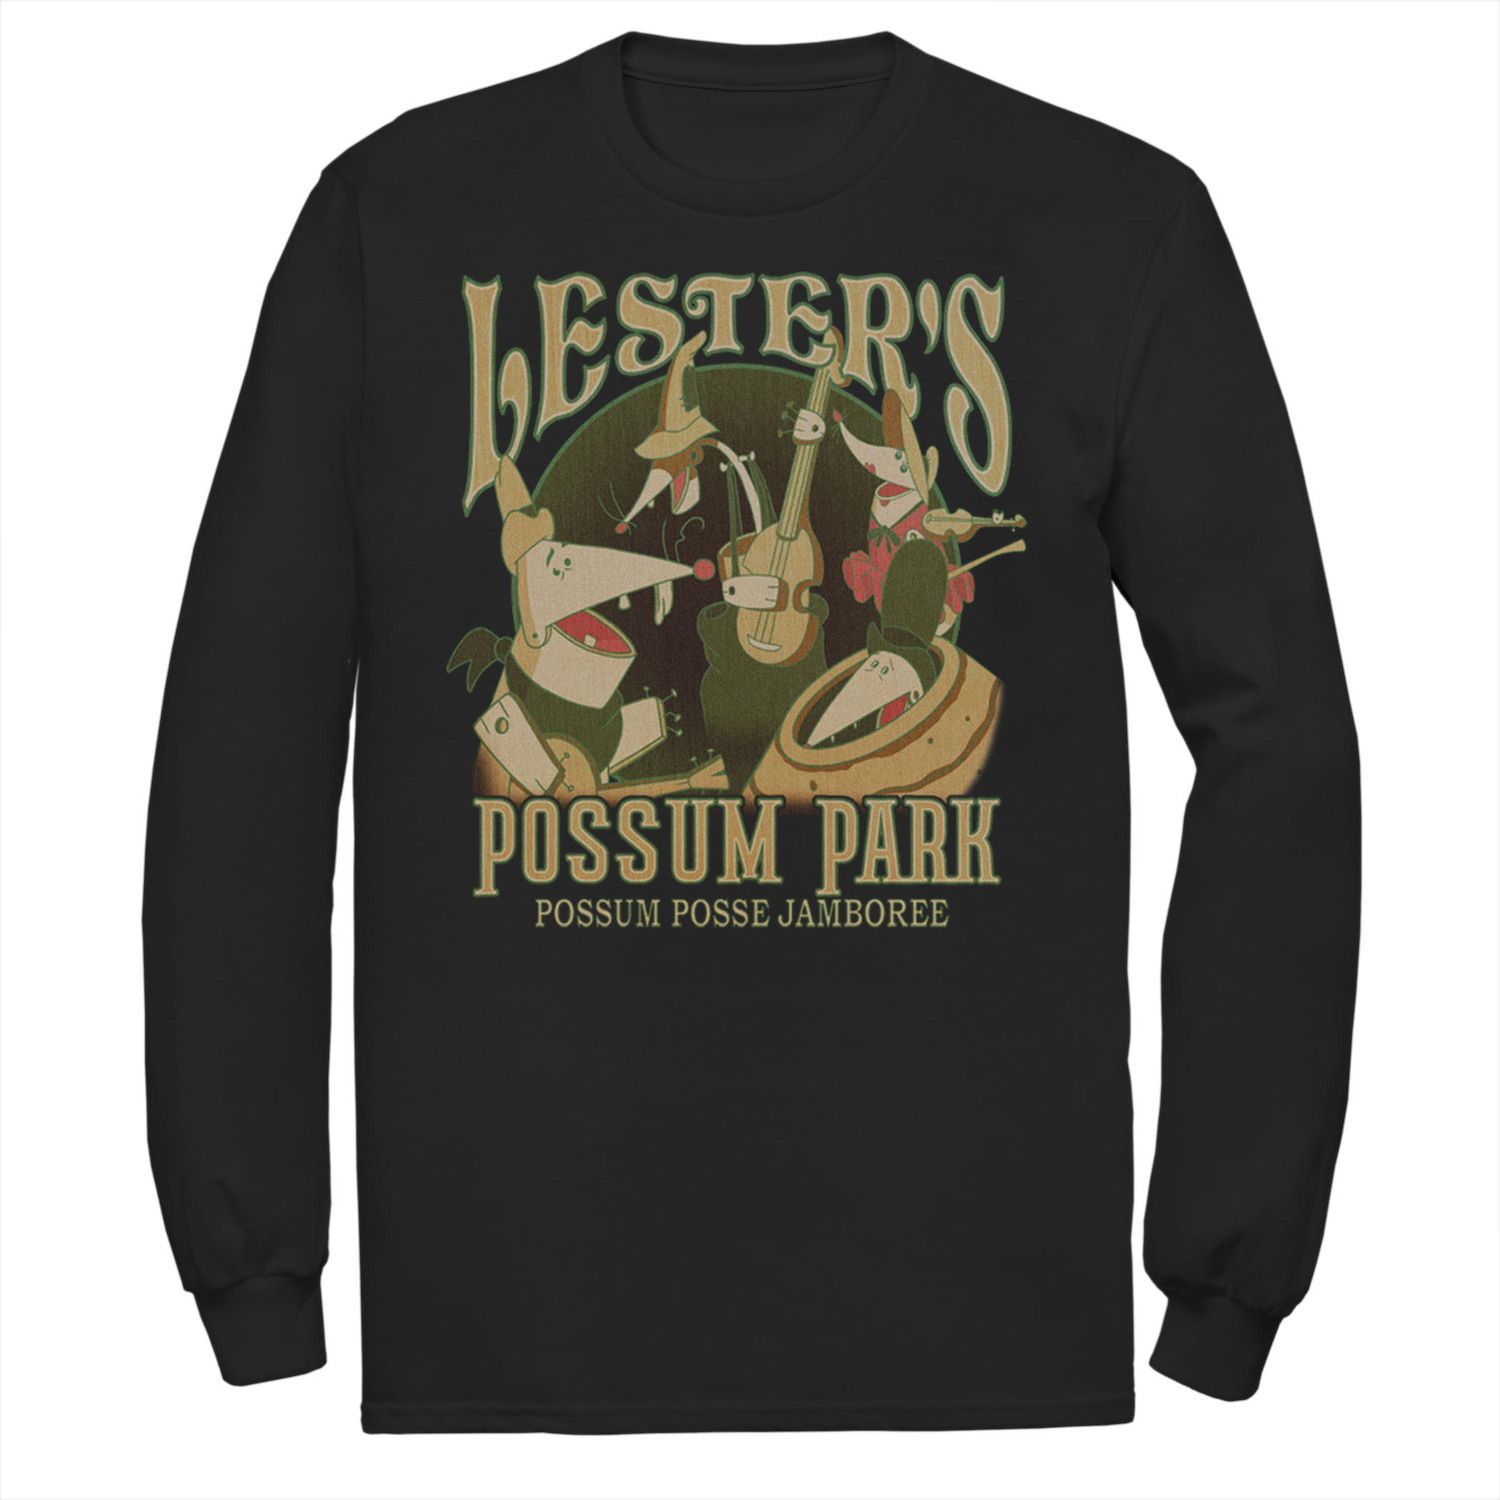 Мужская футболка Disney A Goofy Movie Lester's Possum Park Licensed Character